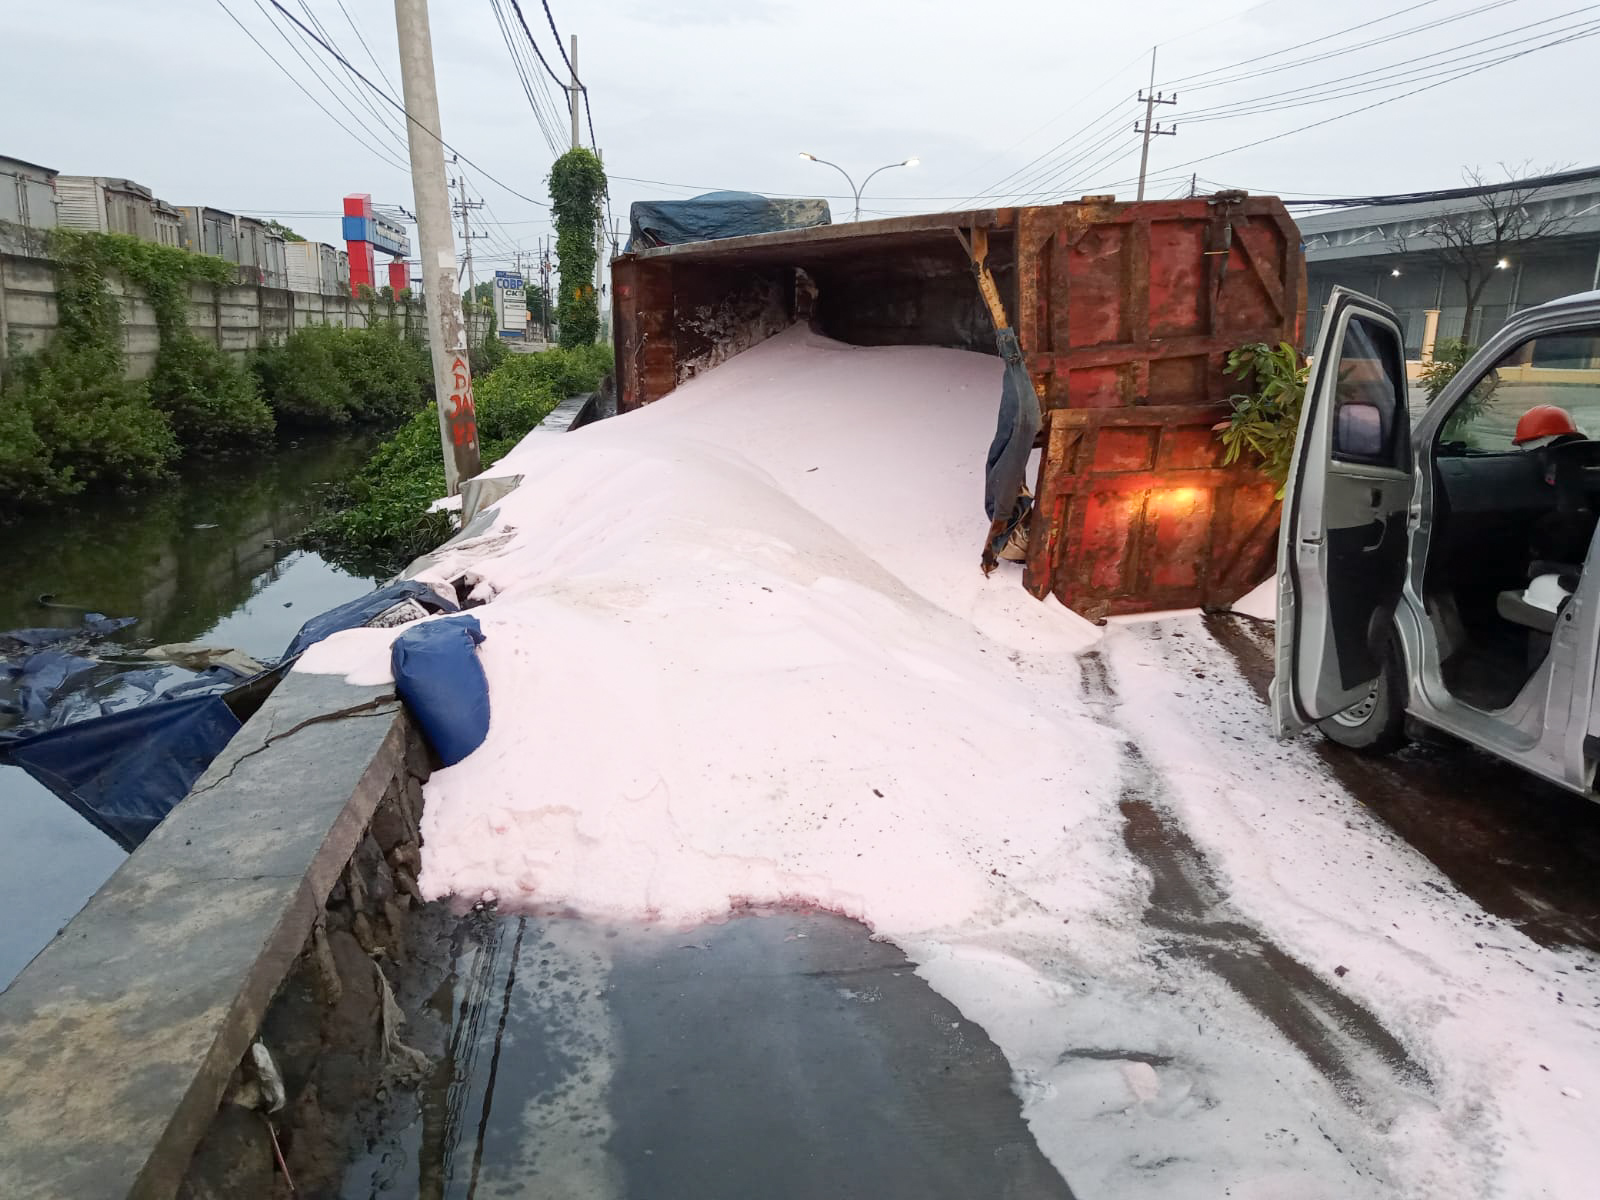 Lewati Jalan Berlubang, Dump Truck Bermuatan Pupuk Urea Terguling